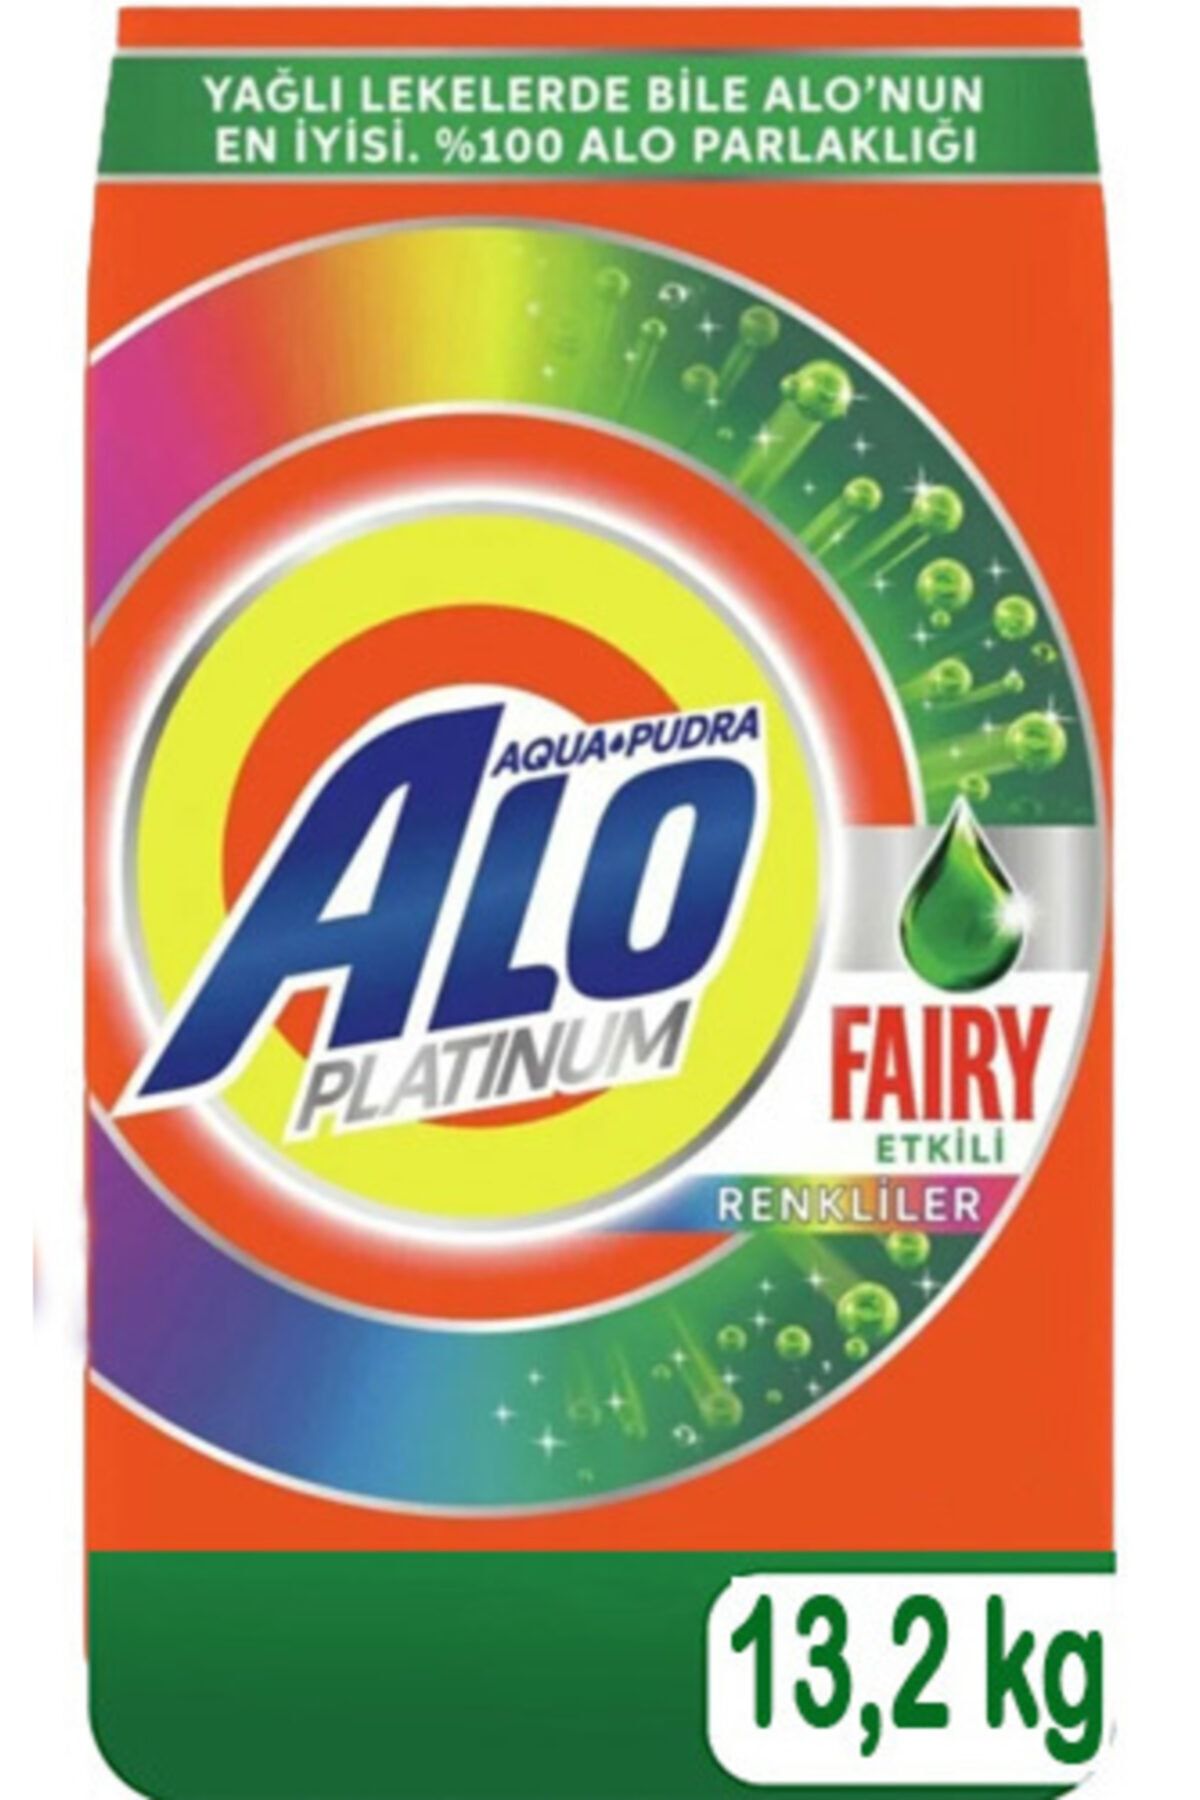 Alo Platinum Toz Çamaşır Deterjanı Fairy Etkili Renkliler Için 13,2kg